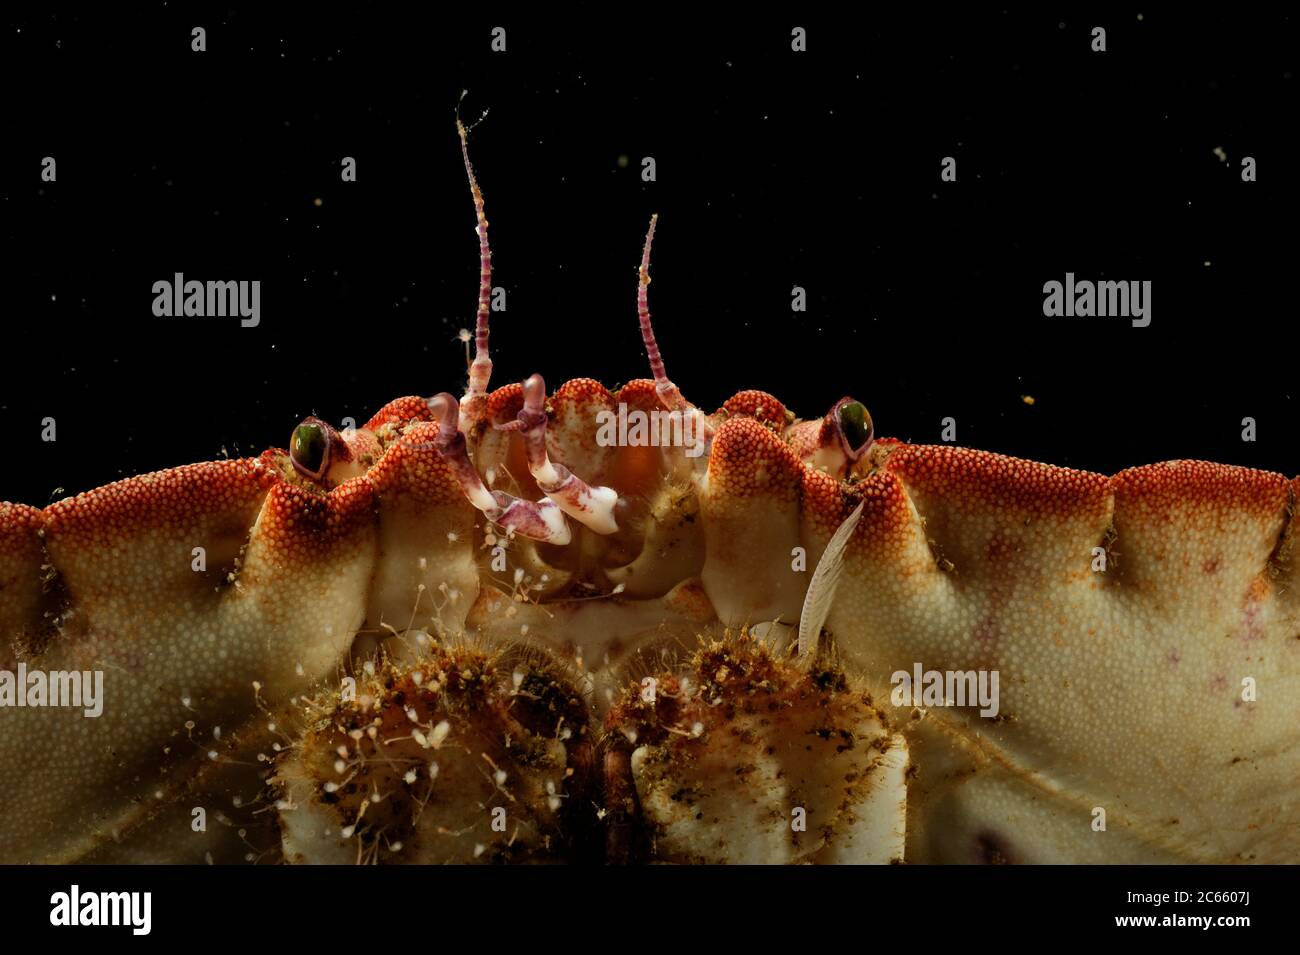 Portrait de crabe comestible (cancer pagurus), Océan Atlantique, Strømsholmen, Nord-Ouest de la Norvège Banque D'Images